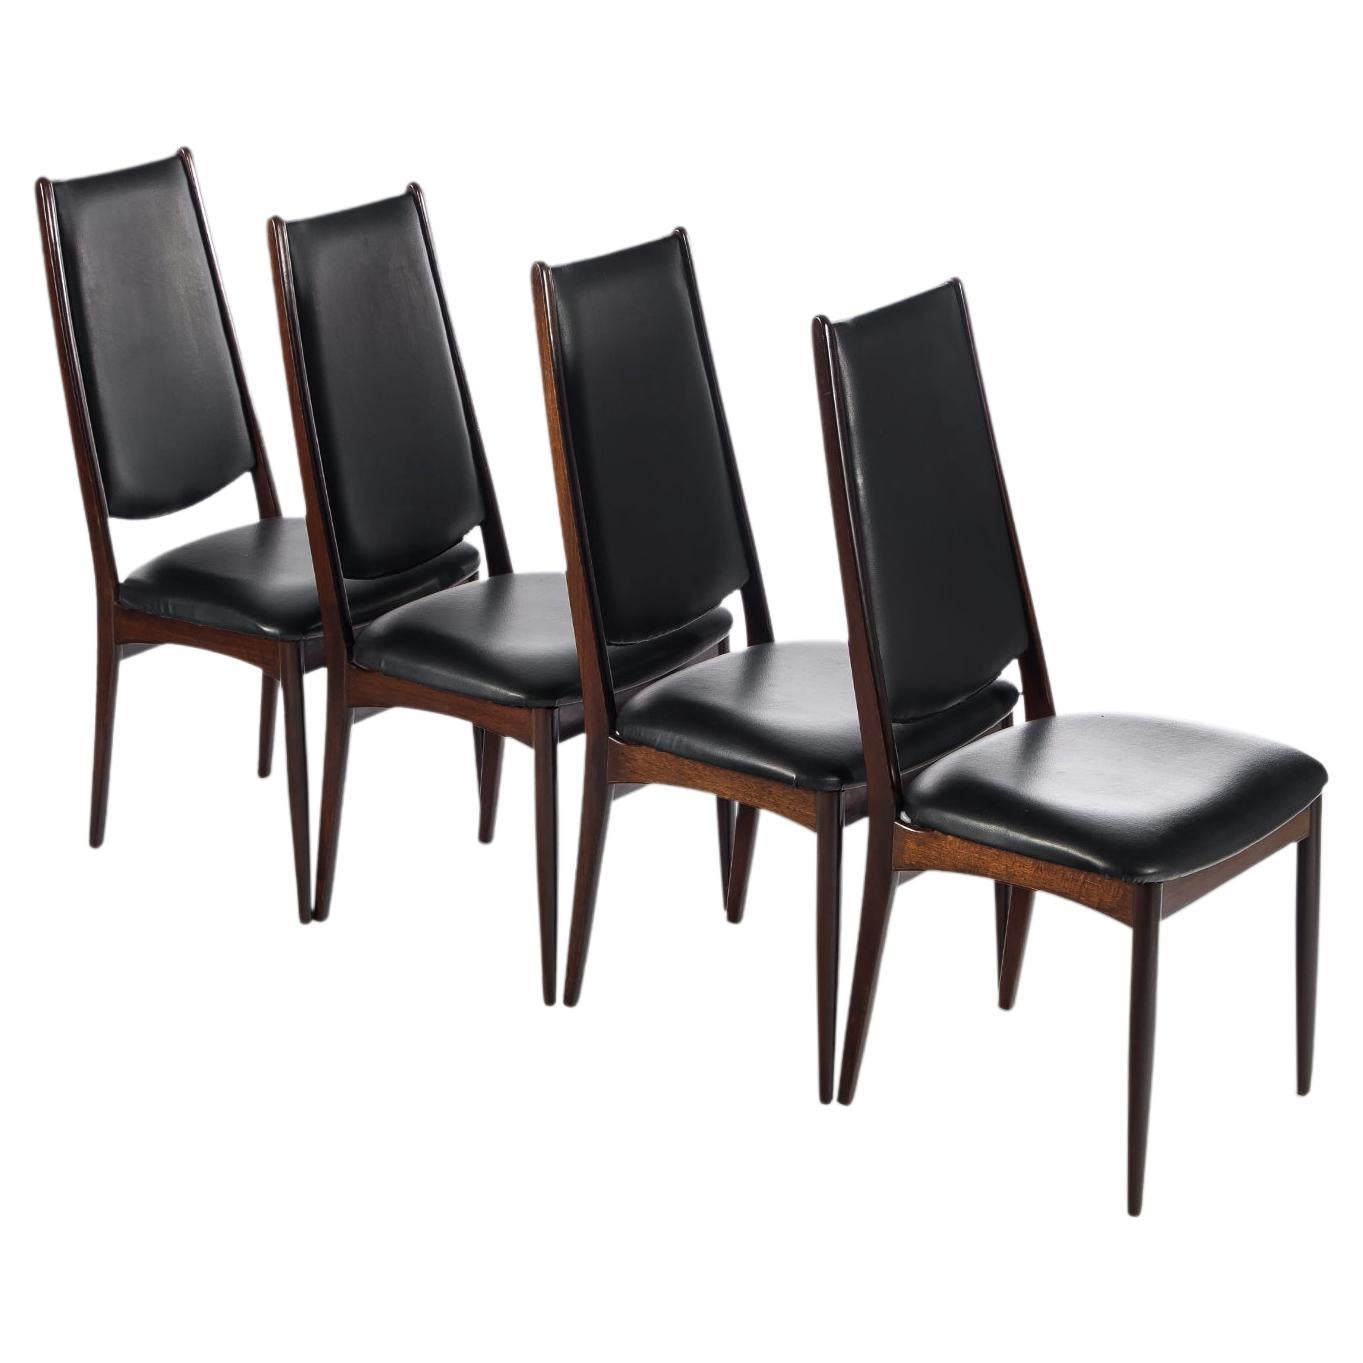 Ensemble de quatre (4) chaises de salle à manger danoises modernes Afromosia à haut dossier, vers 1970